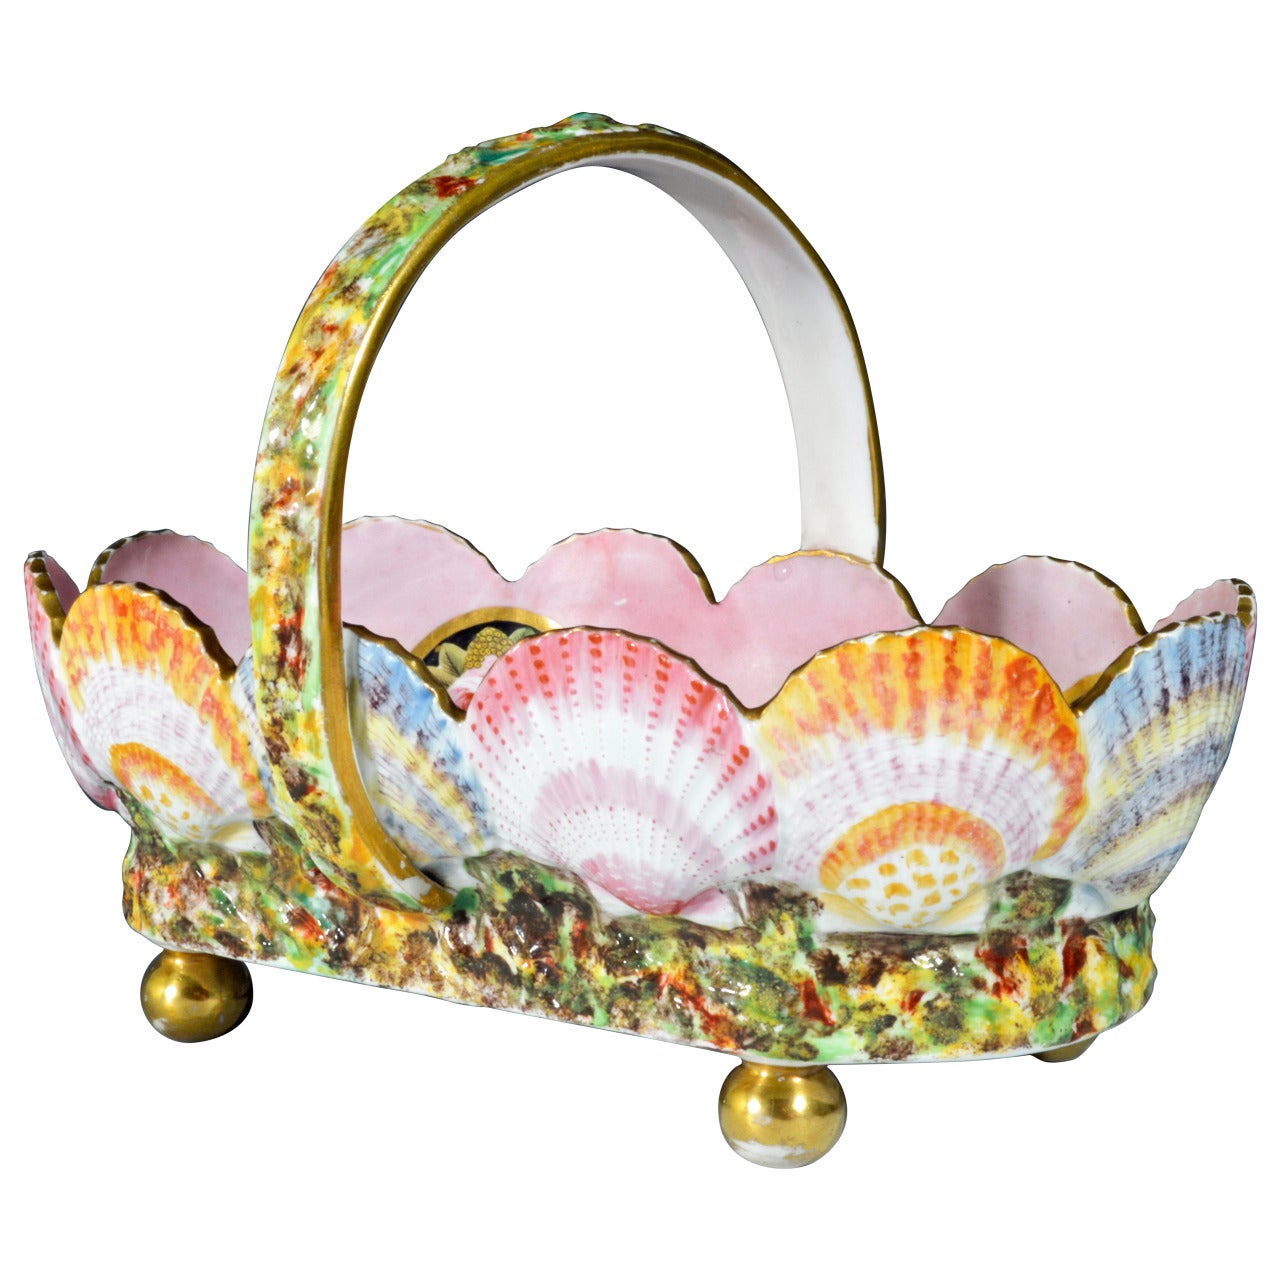 Unusual Spode Porcelain Shell-Moulded Basket